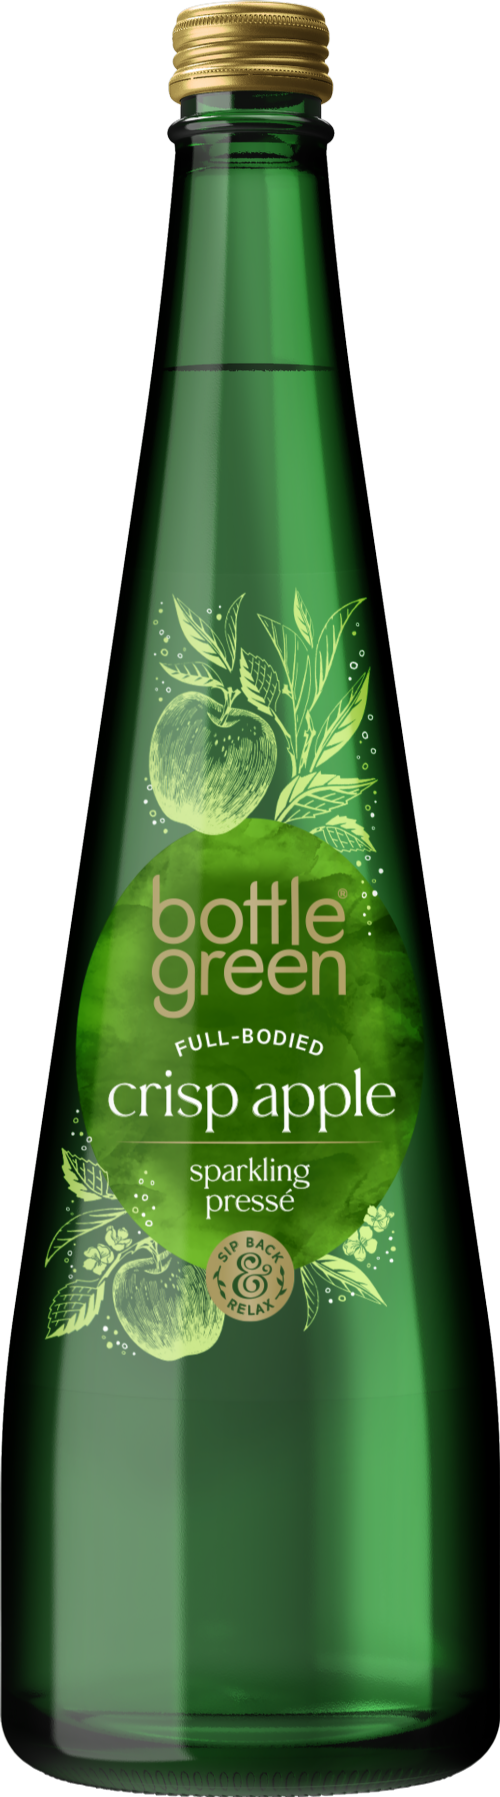 BOTTLE GREEN Full-Bodied Crisp Apple Sparkling Presse 750ml